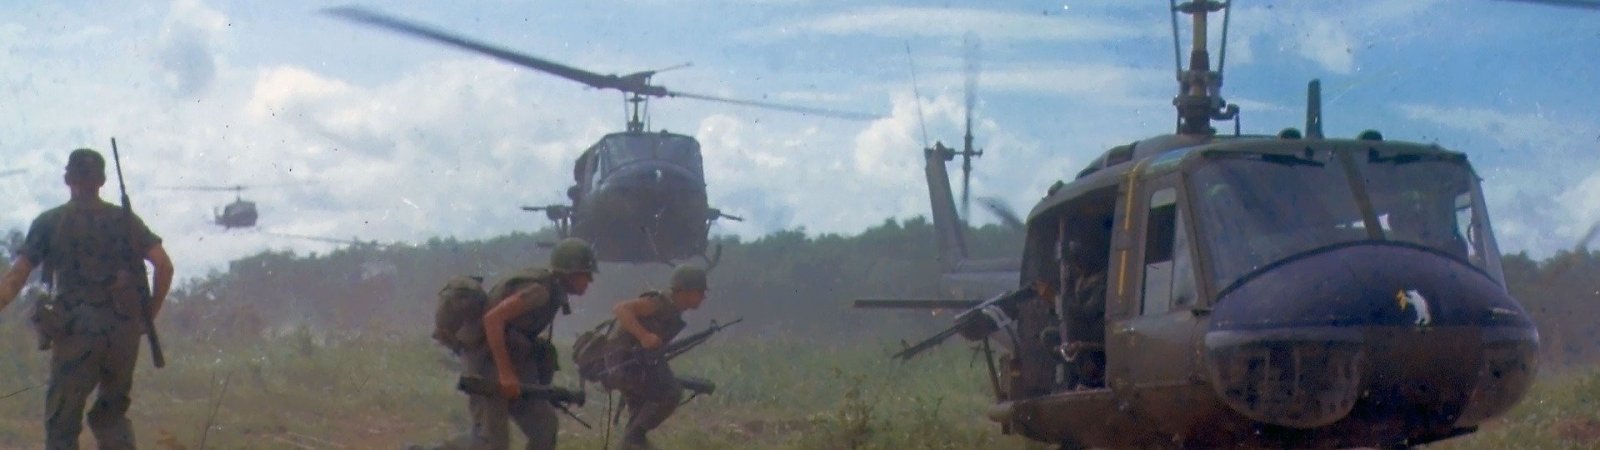 10 films sur la guerre du Vietnam